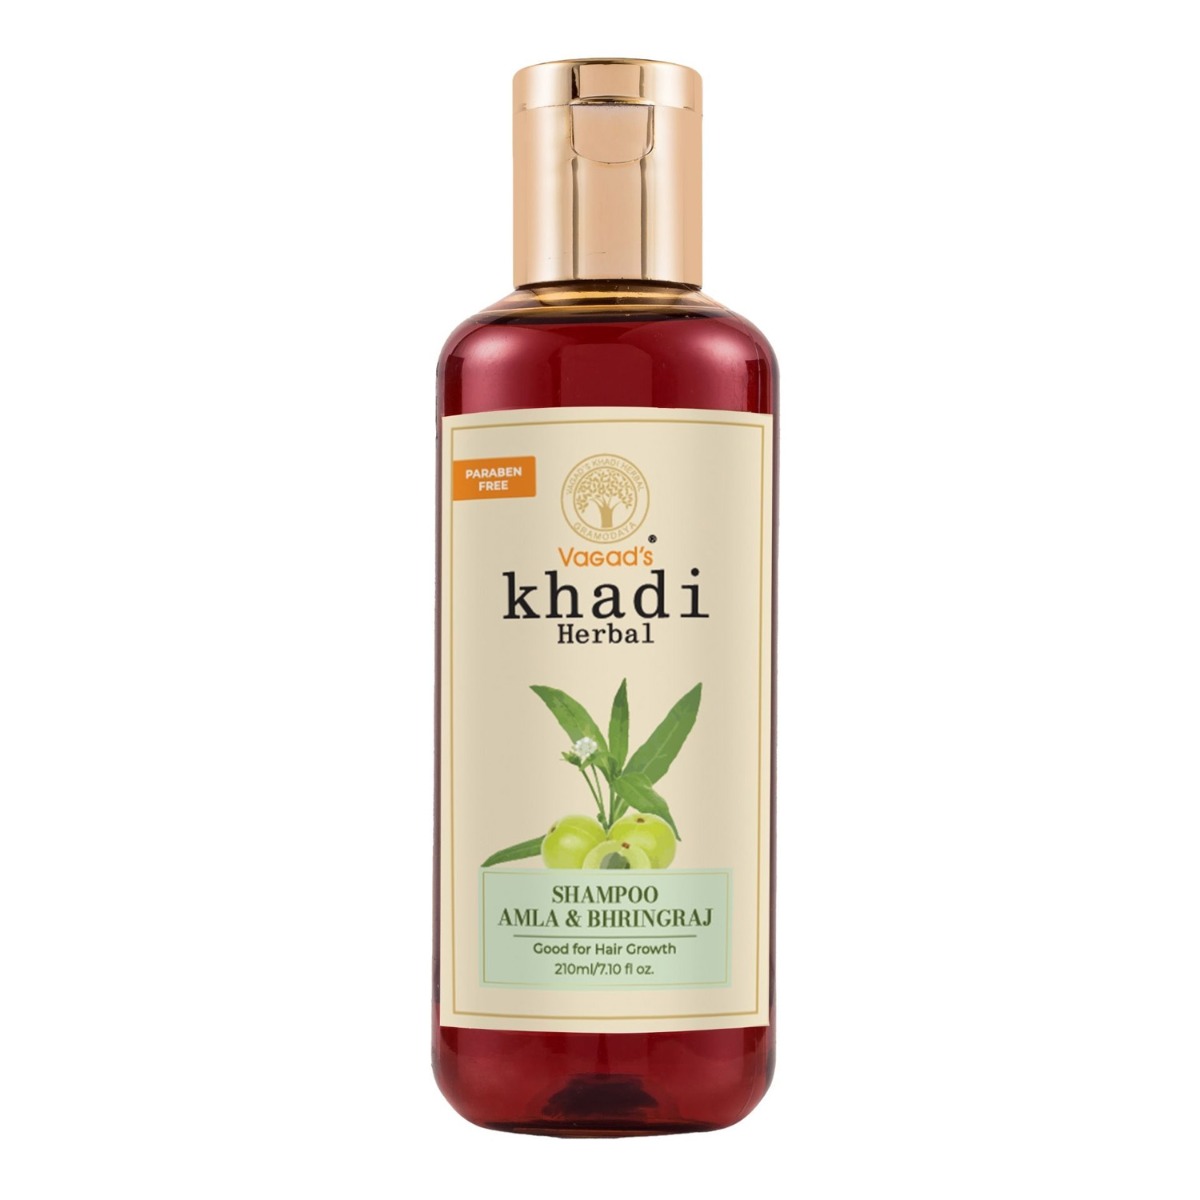 Vagad's Khadi Amla & Bhringraj Shampoo, 210ml